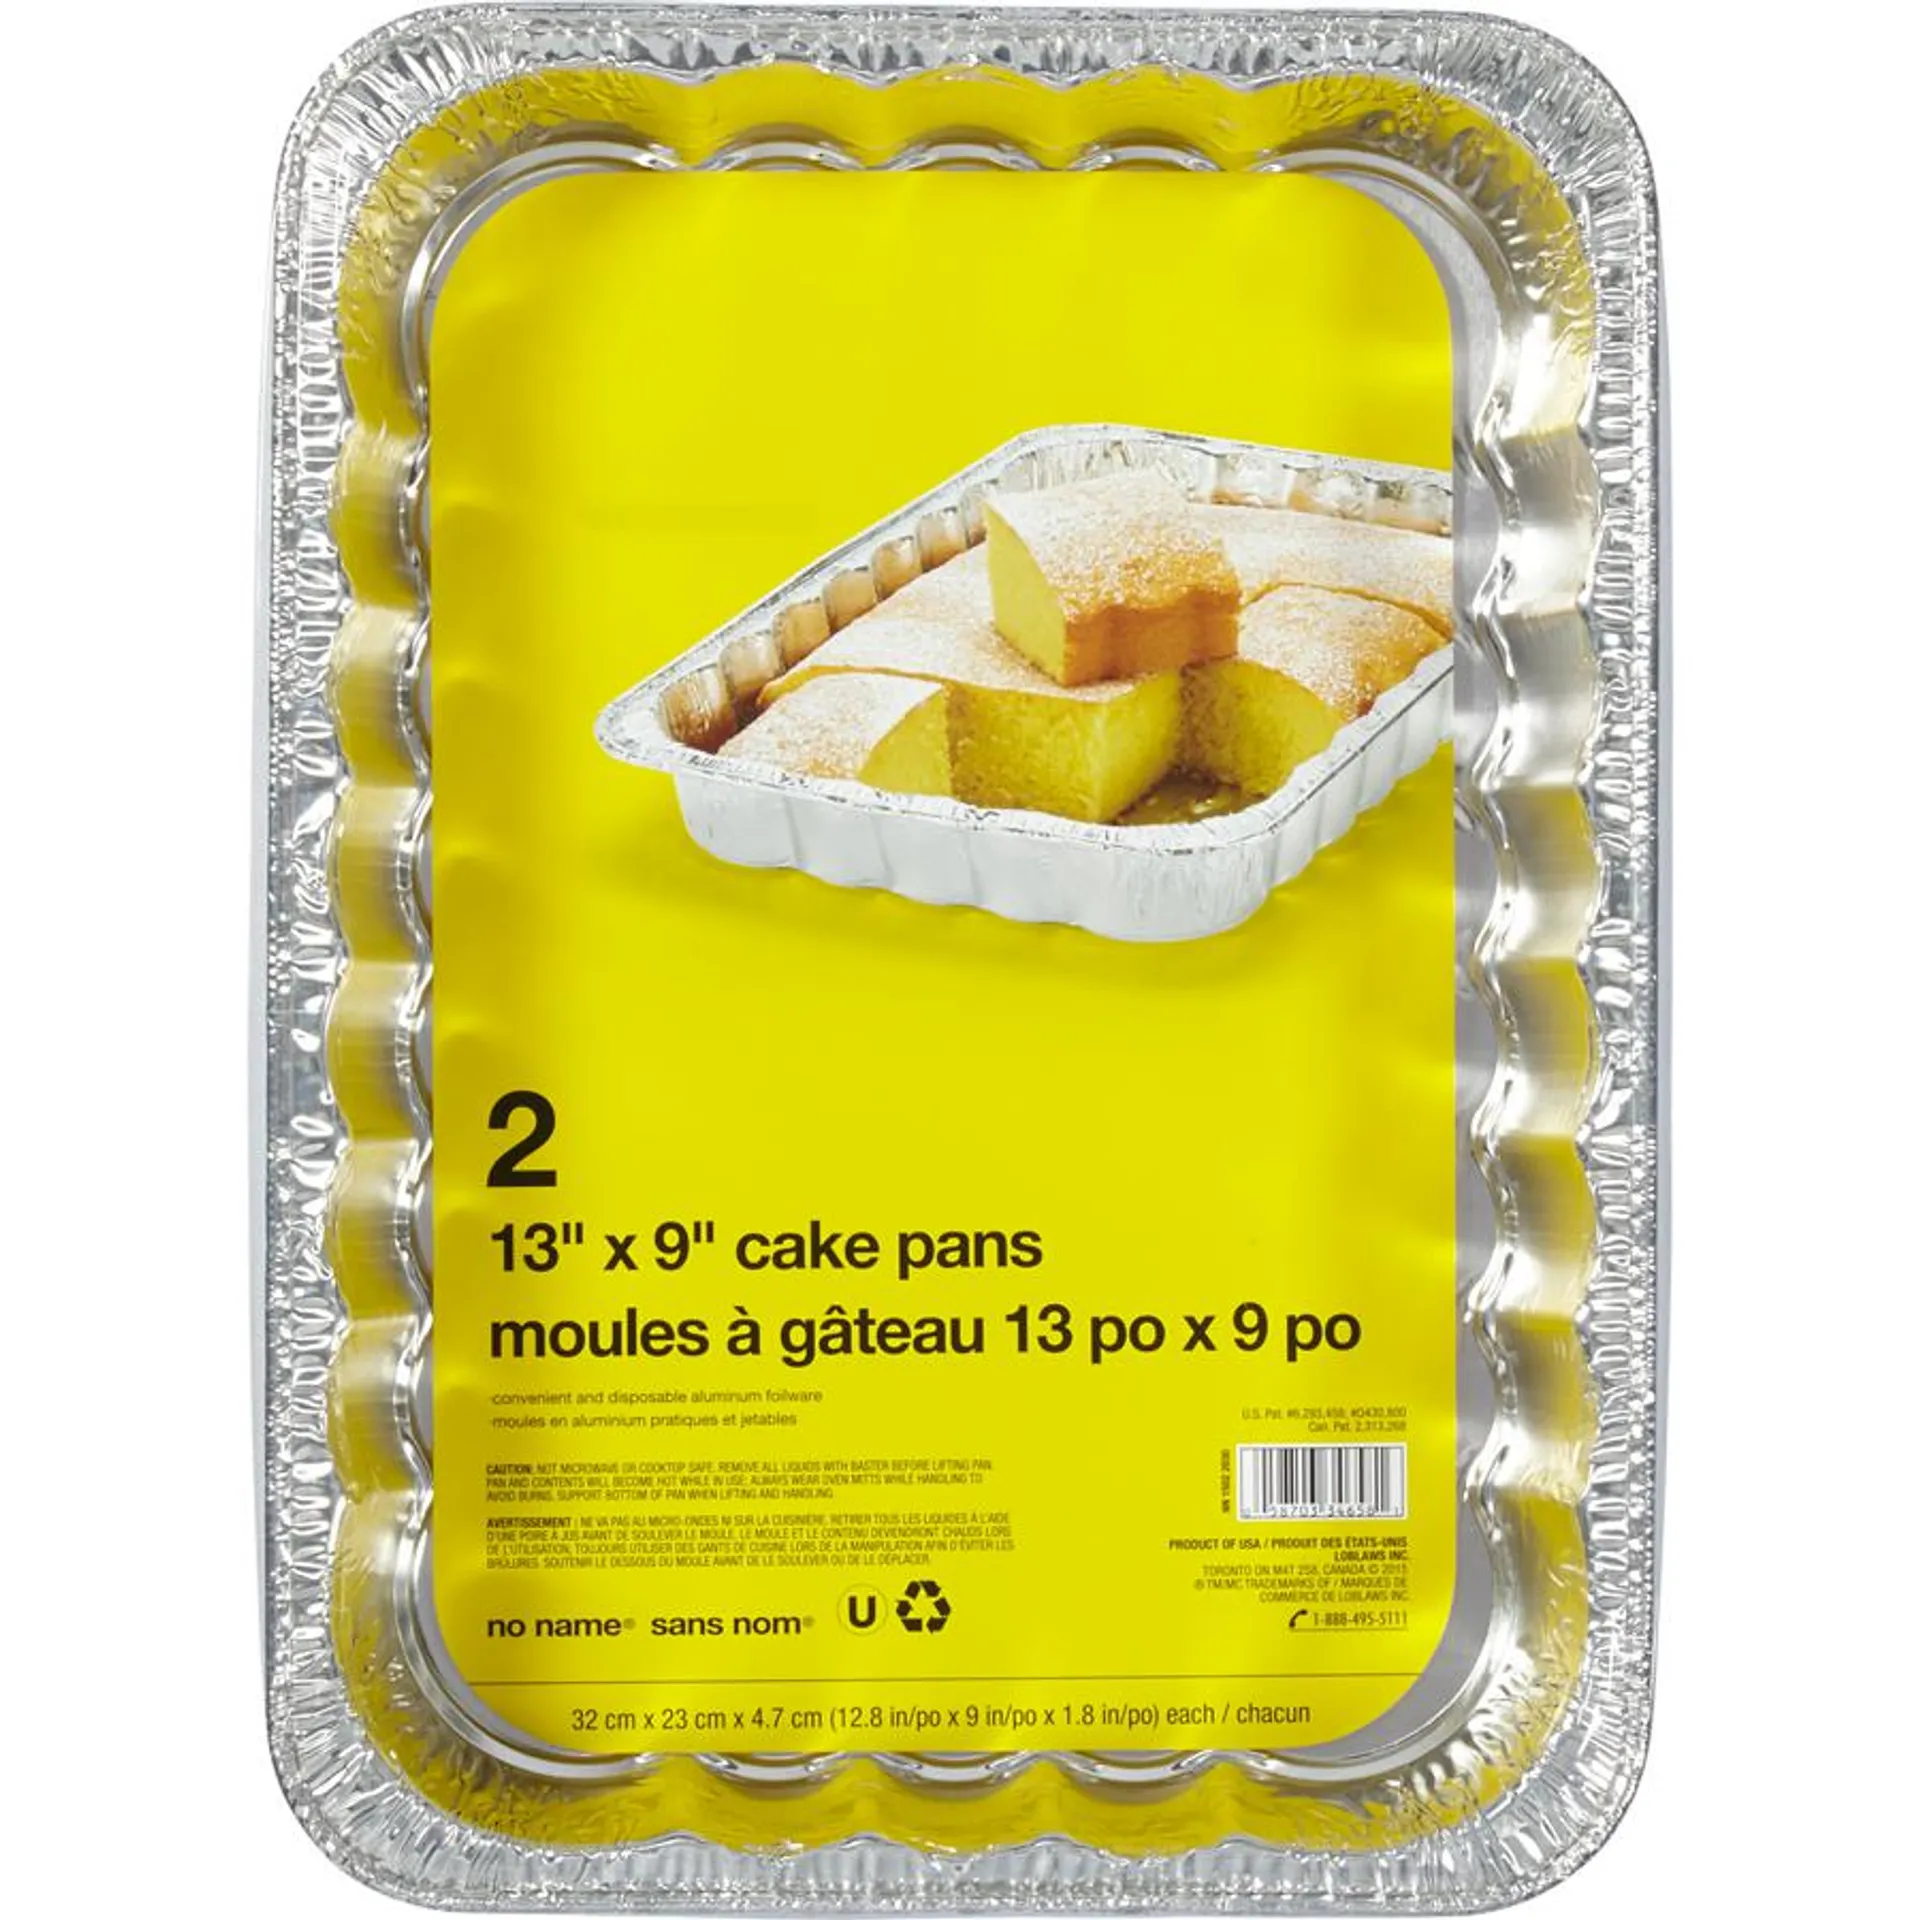 Cake Pans, 13x9 "